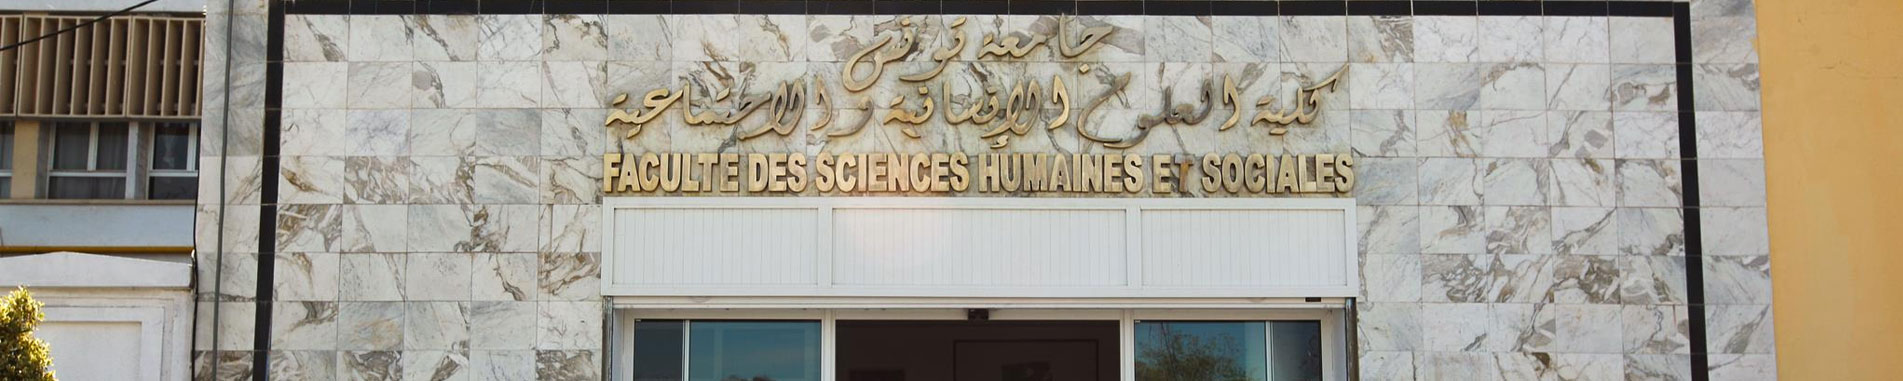 Faculté des Sciences Humaines et Sociales de Tunis - FSHST